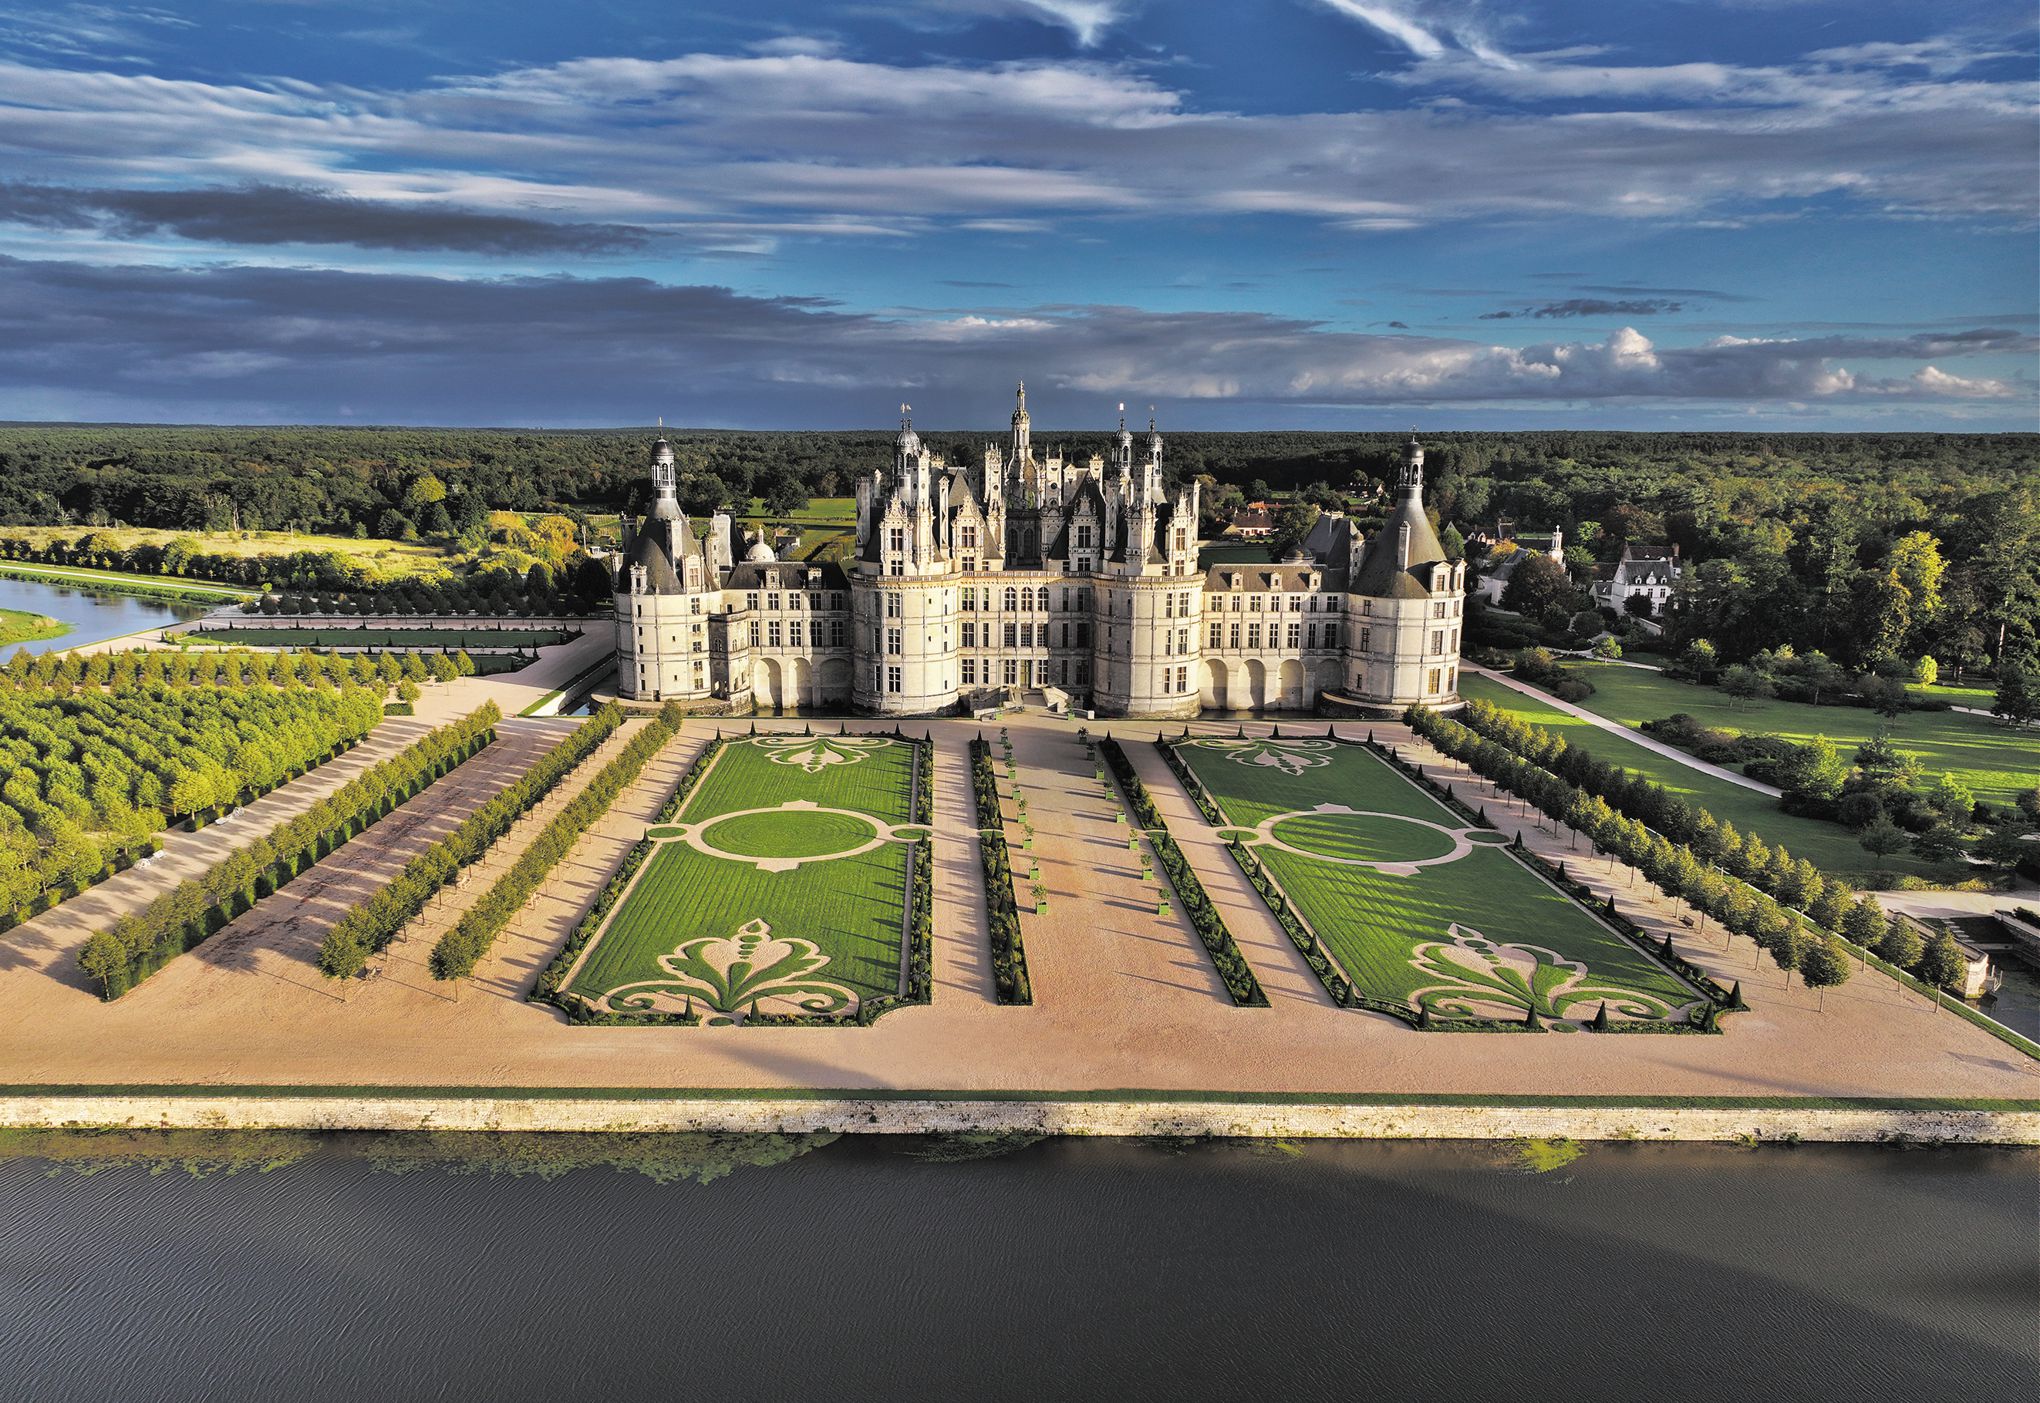 Renaissance et Révolutions: le nouveau projet du château de Chambord, mis au défi de se repenser